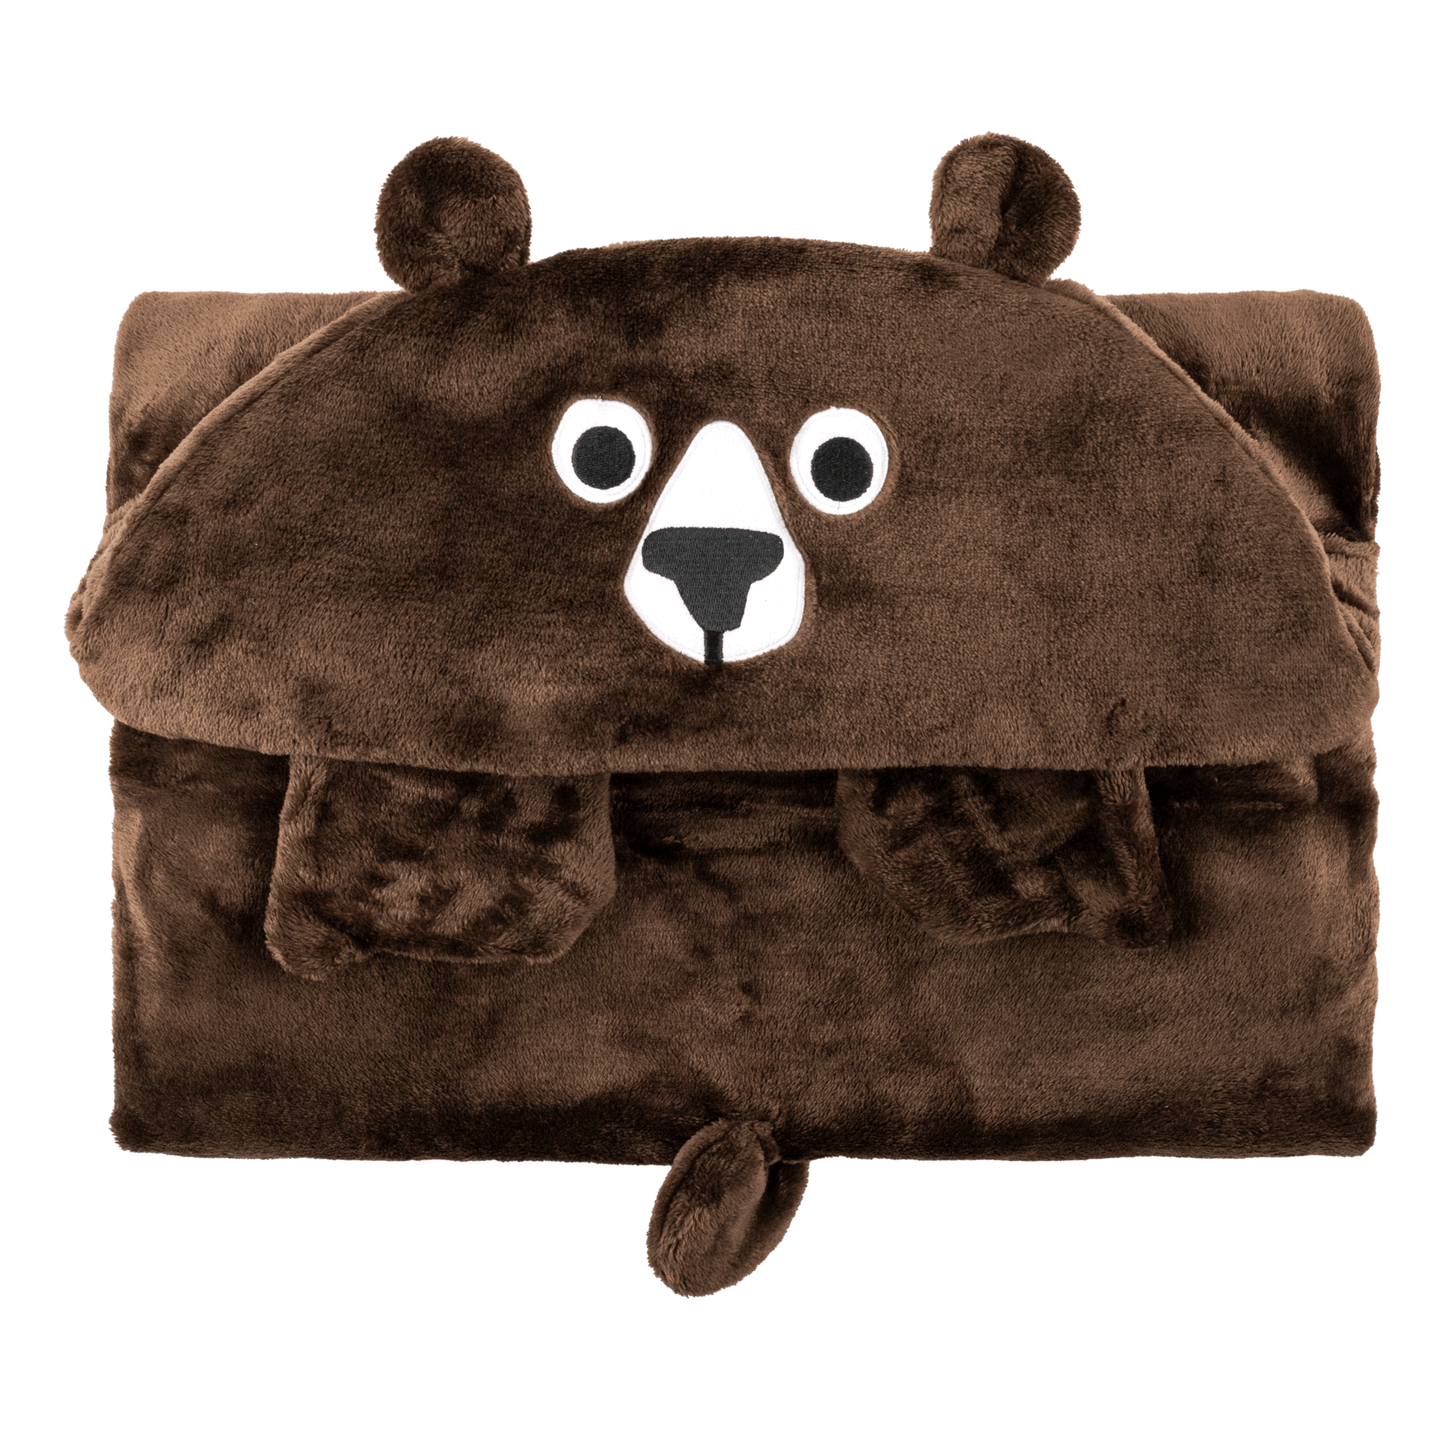 Zoocchini Wearable Hooded Blanket - Bear